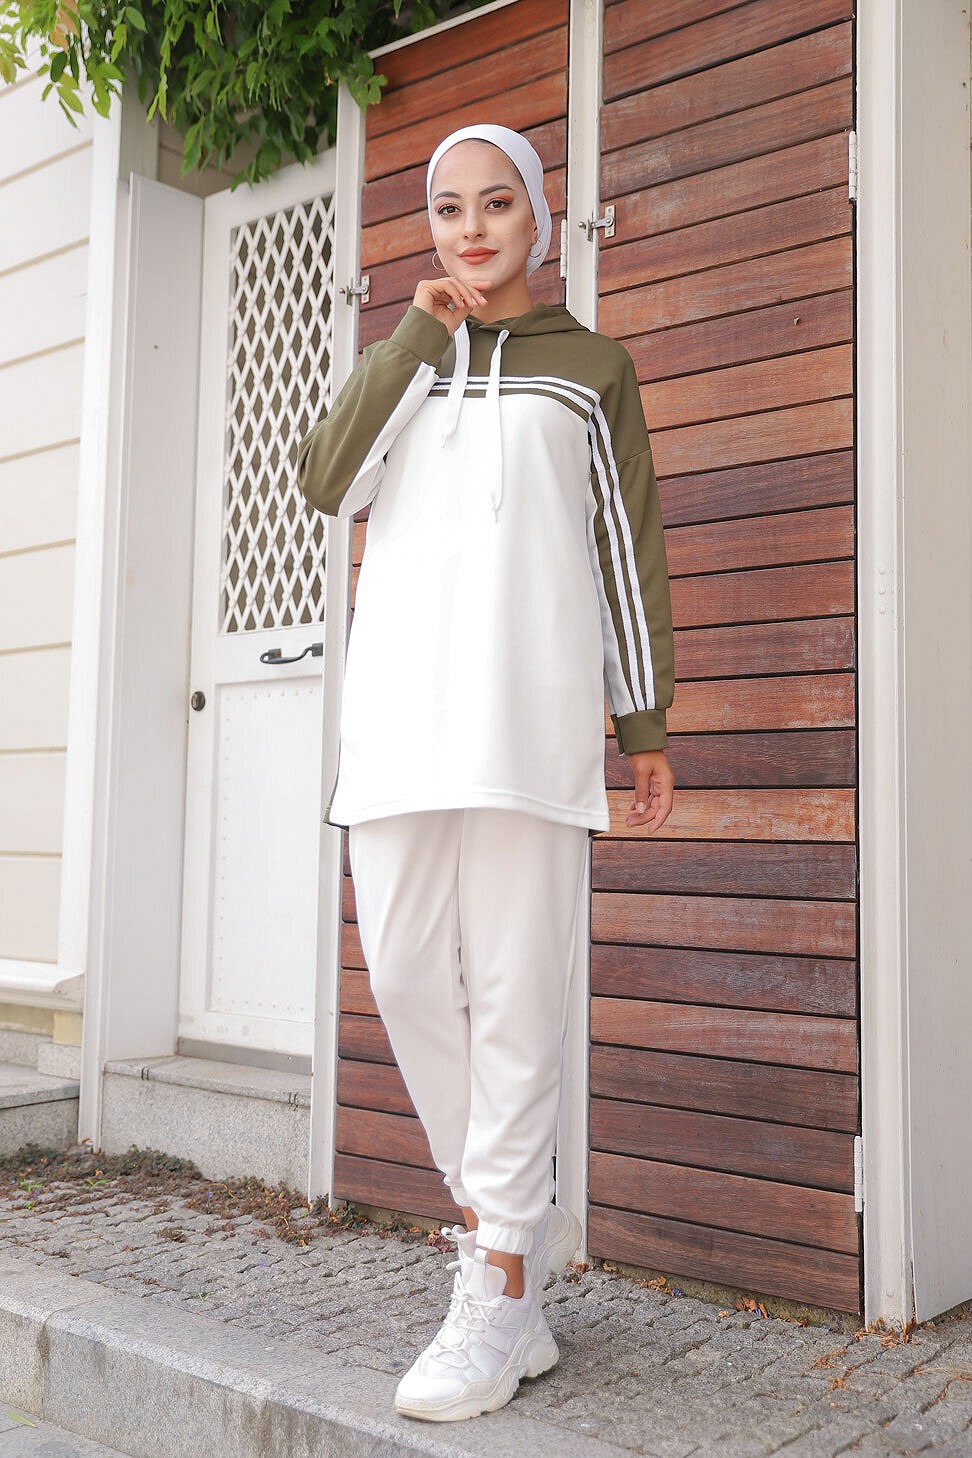 Survêtement Sport femme (Ensemble deux pièces sweet à capuche et pantalon)  - Couleur Blanc et Kaki - Prêt à porter et accessoires sur